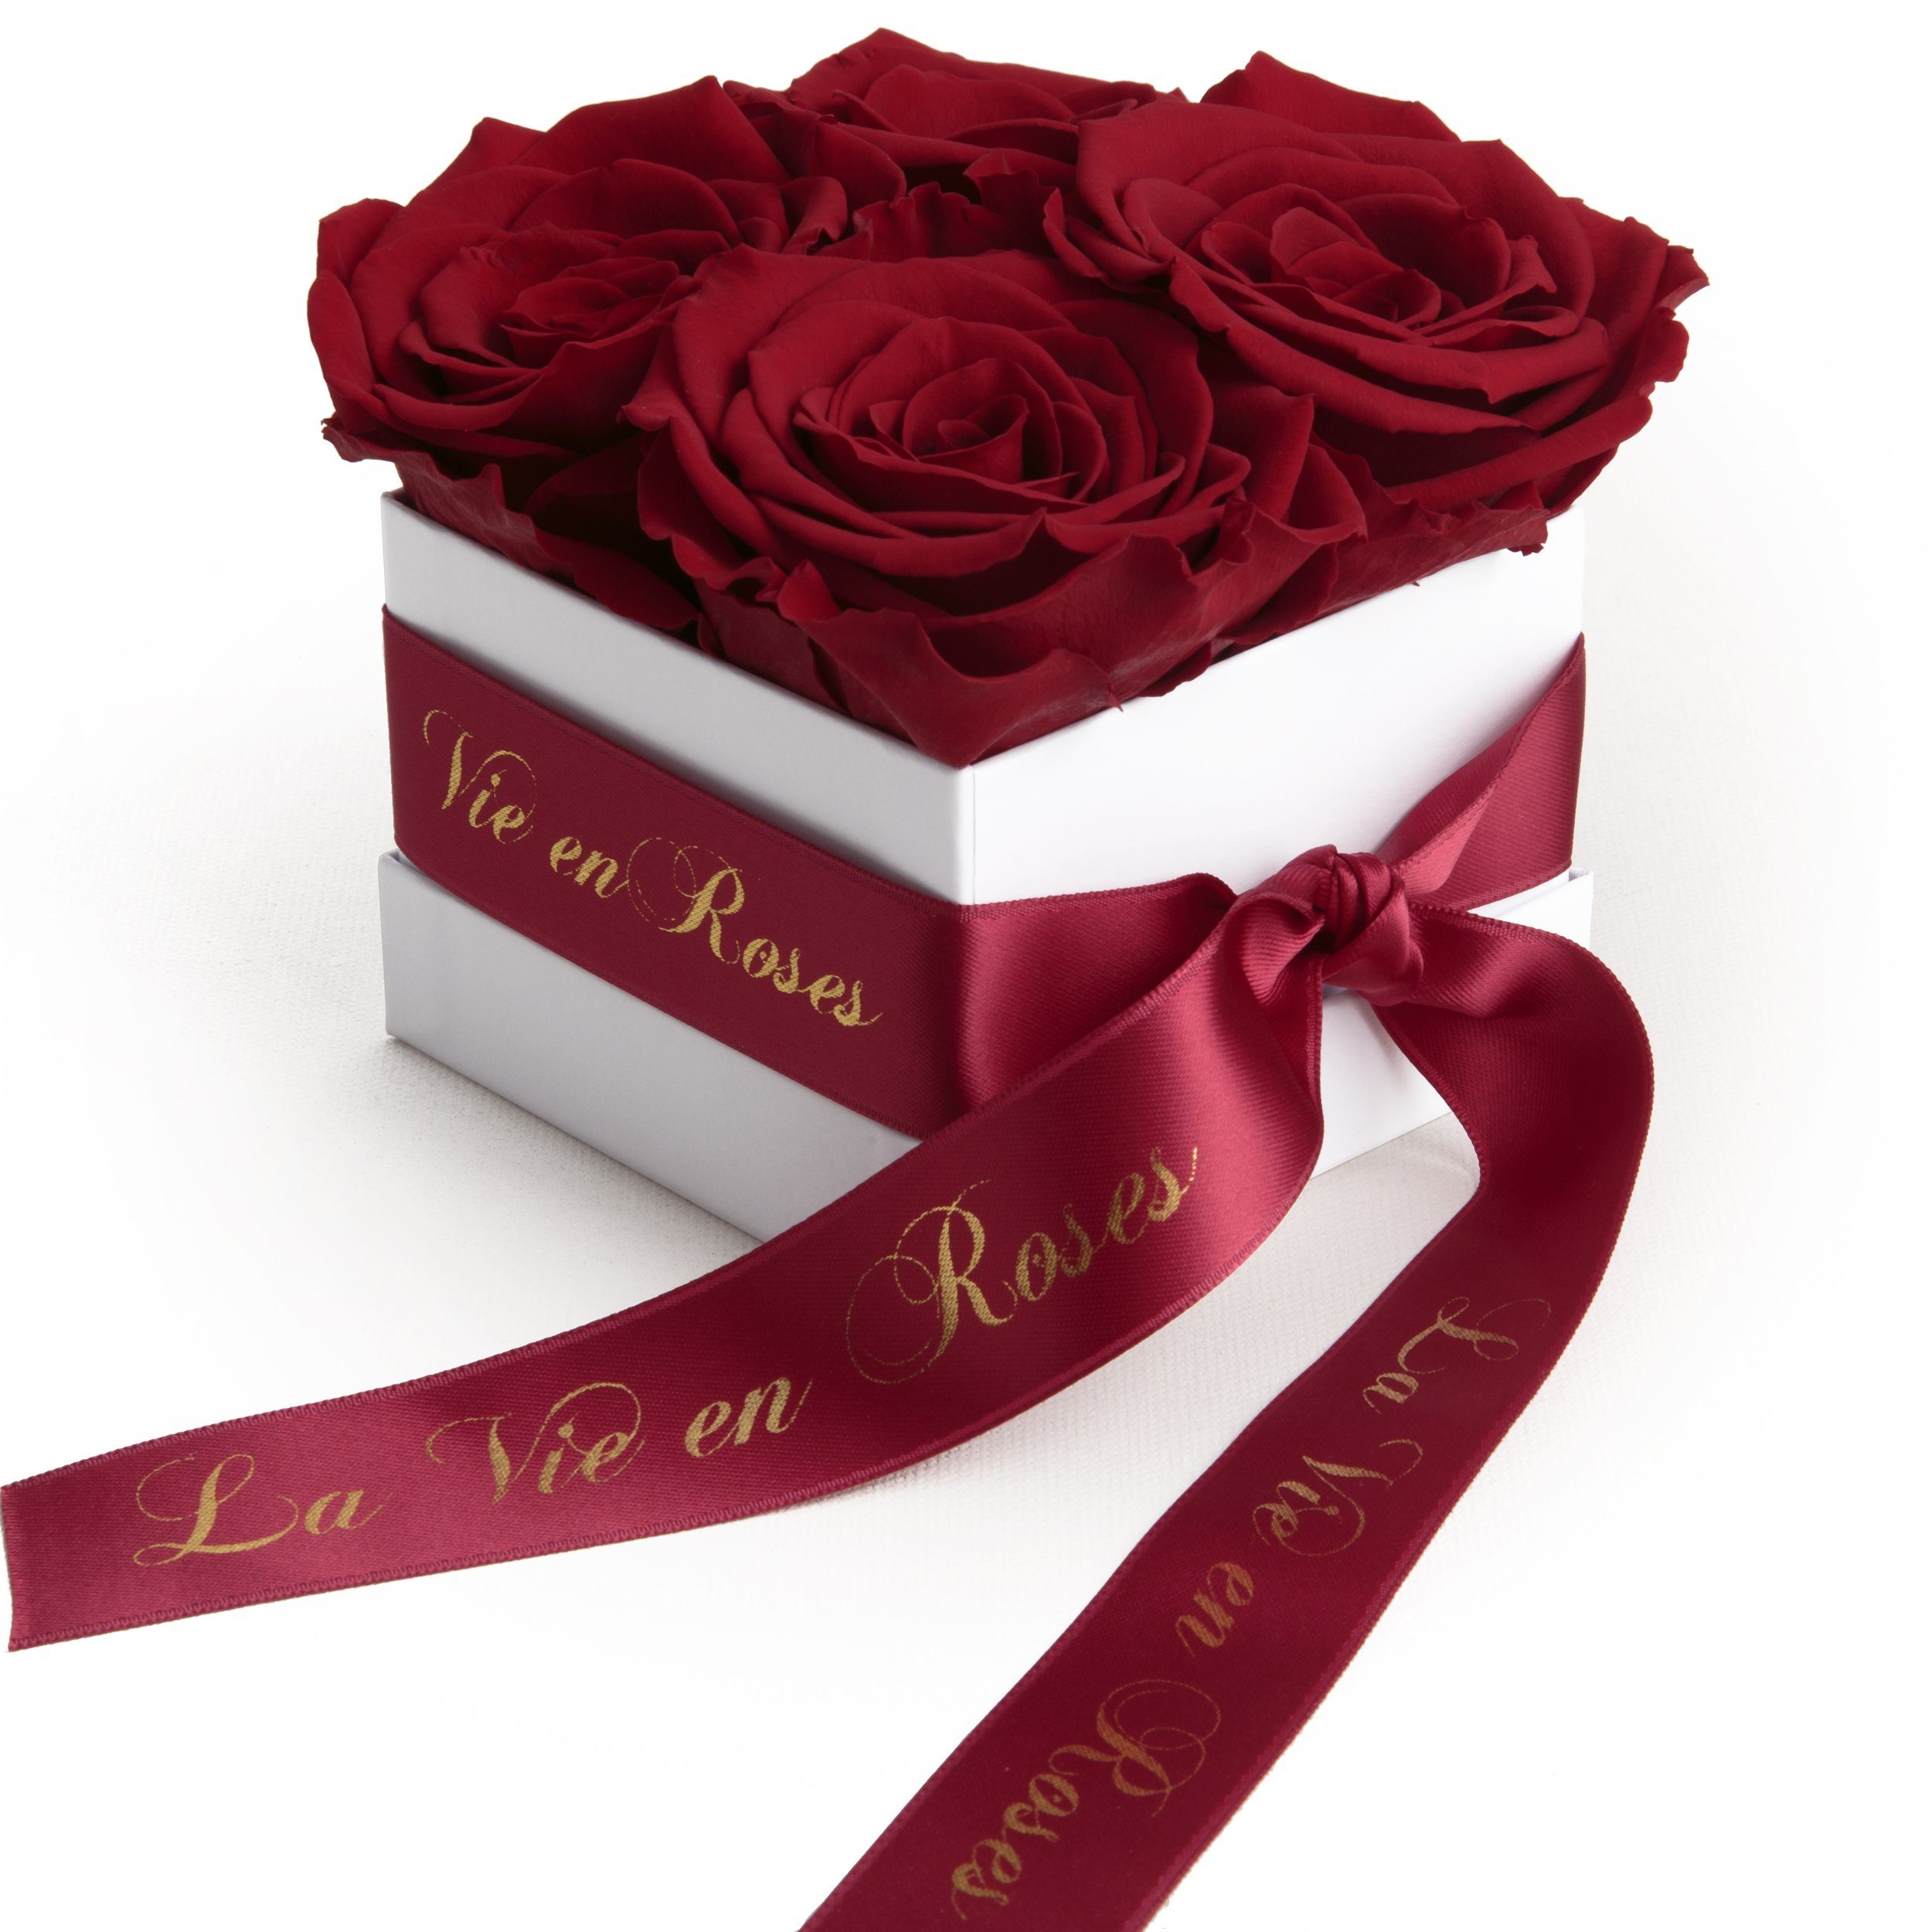 Dunkelrot Valentinstag Geschenk Frauen Heidelberg, SCHULZ Rose, 8.5 Poesie zum Rosenbox Damen ROSEMARIE für Kunstblume weiß Rosen cm, Höhe Deko Infinity für